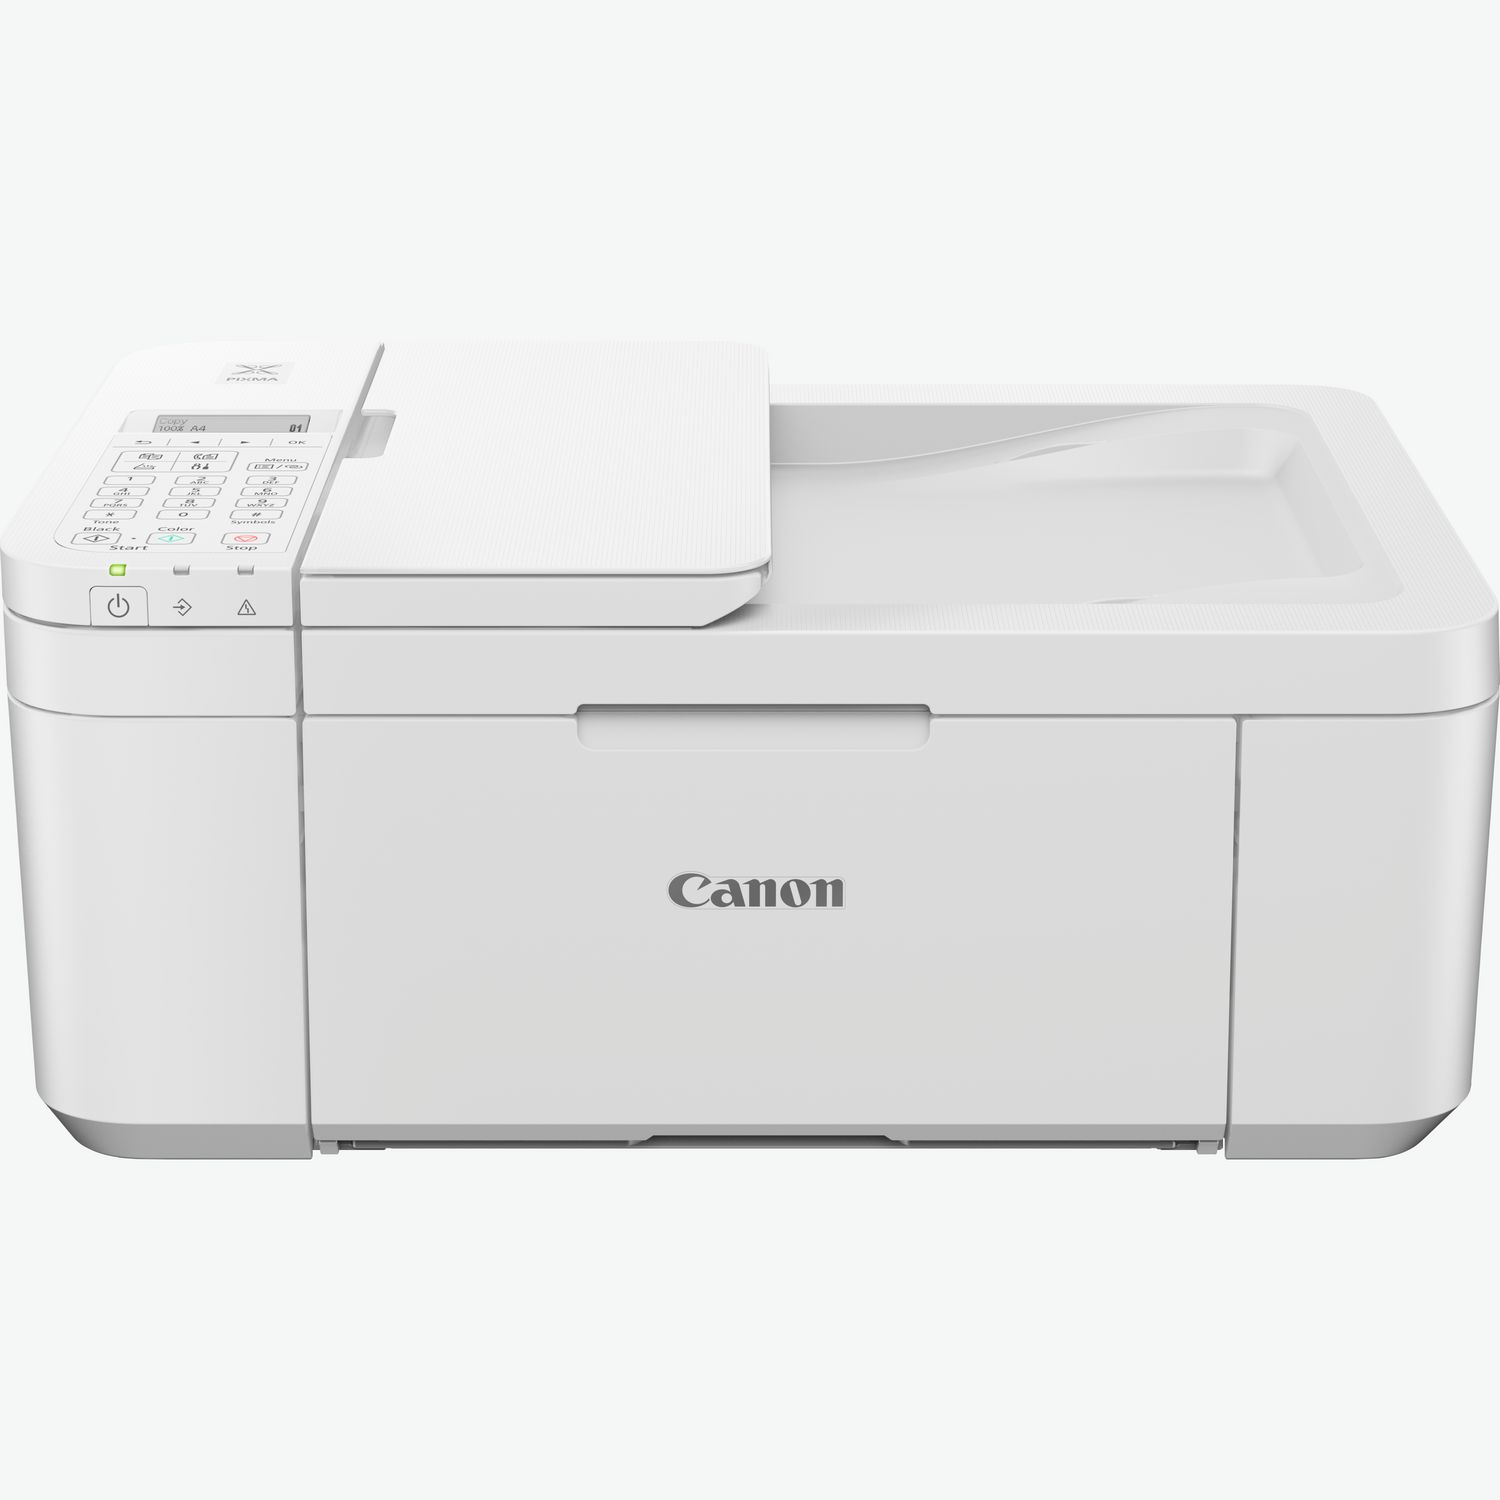 Imprimante Canon PIXMA TS3450 : L'imprimante bon marché pour le quotidien